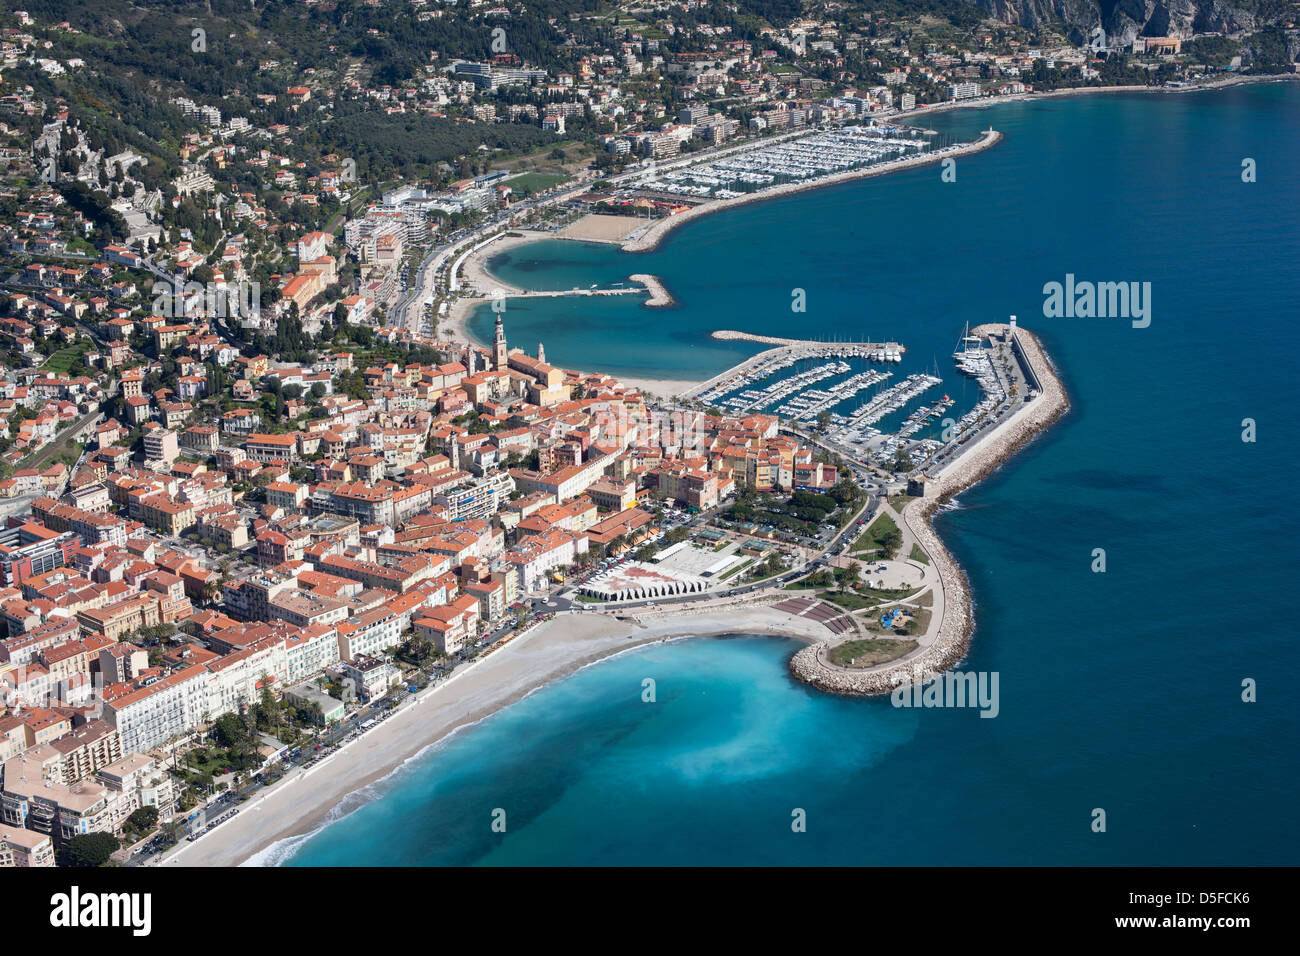 LUFTAUFNAHME. Die Altstadt und der Yachthafen von Menton. Französische Riviera, Alpes-Maritimes, Frankreich. Stockfoto